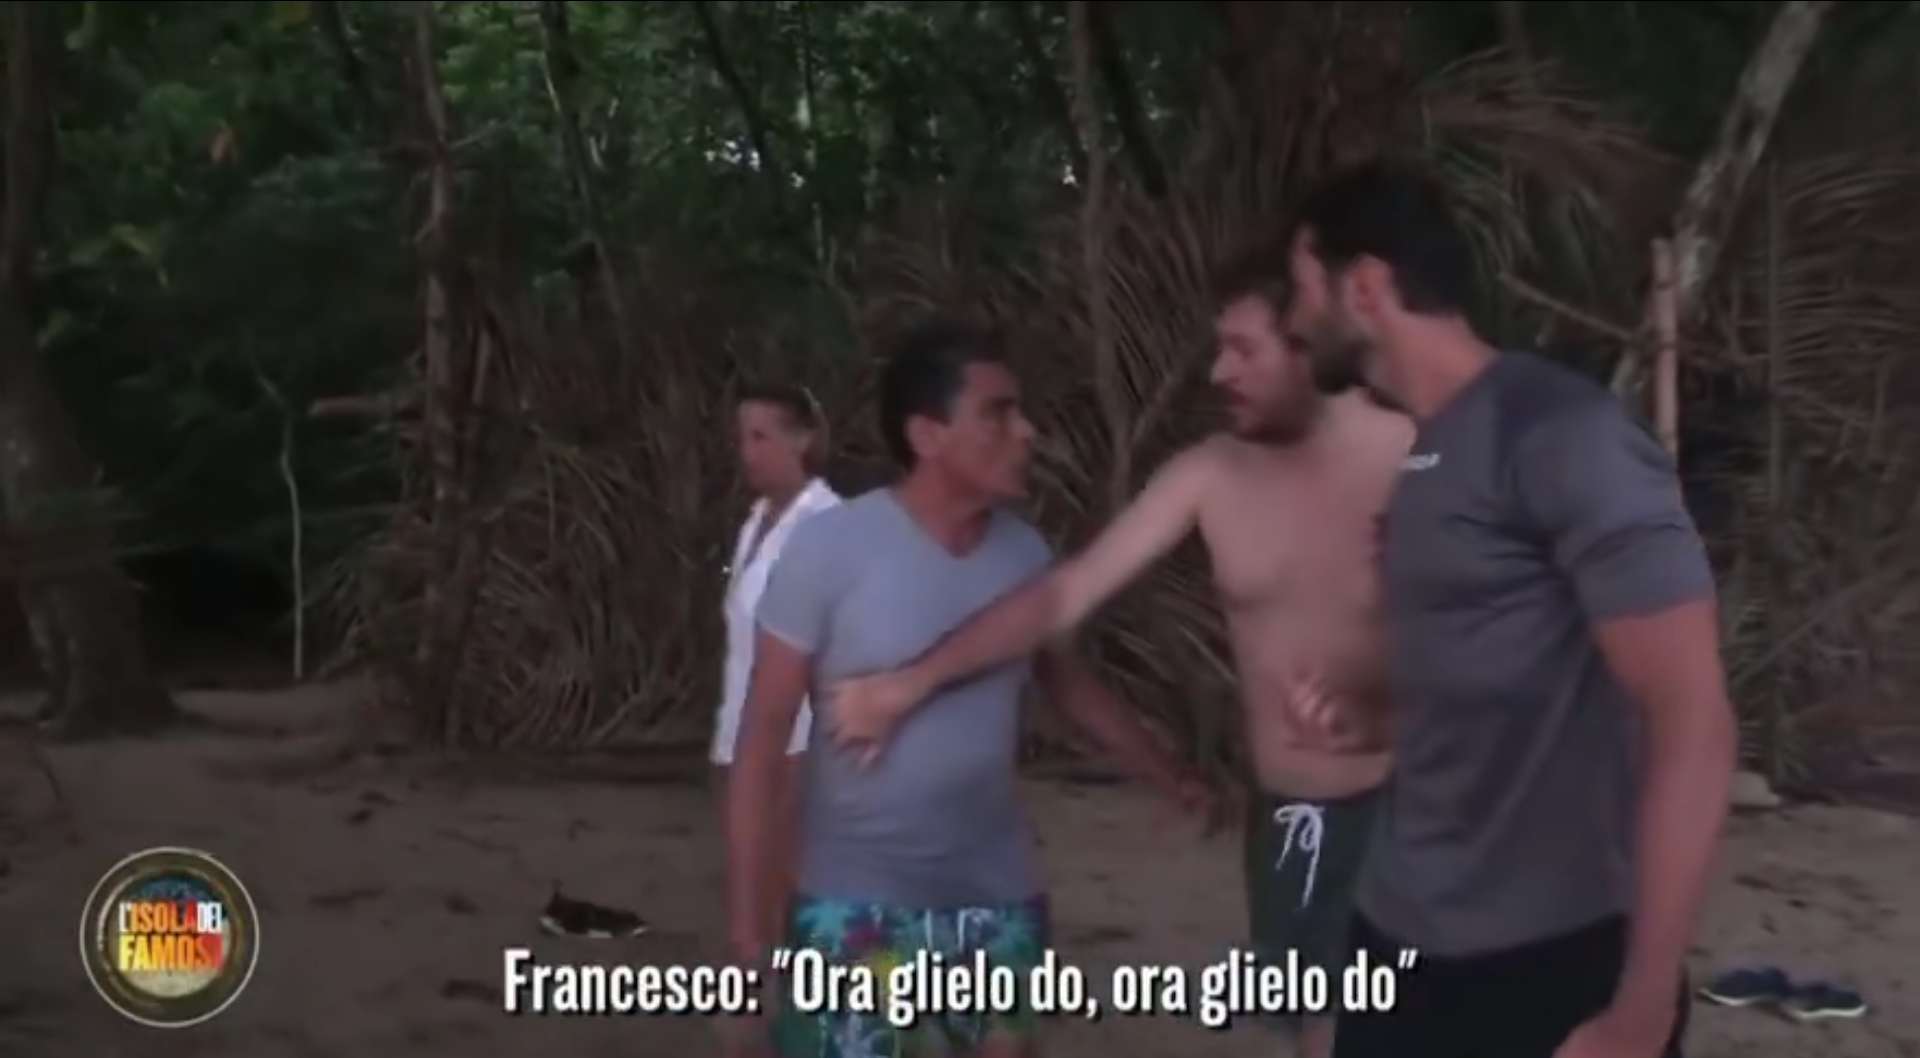 La reazione di Benigno dopo il video mostrato all’Isola: “Offerti soldi per tenere chiusa la bocca”